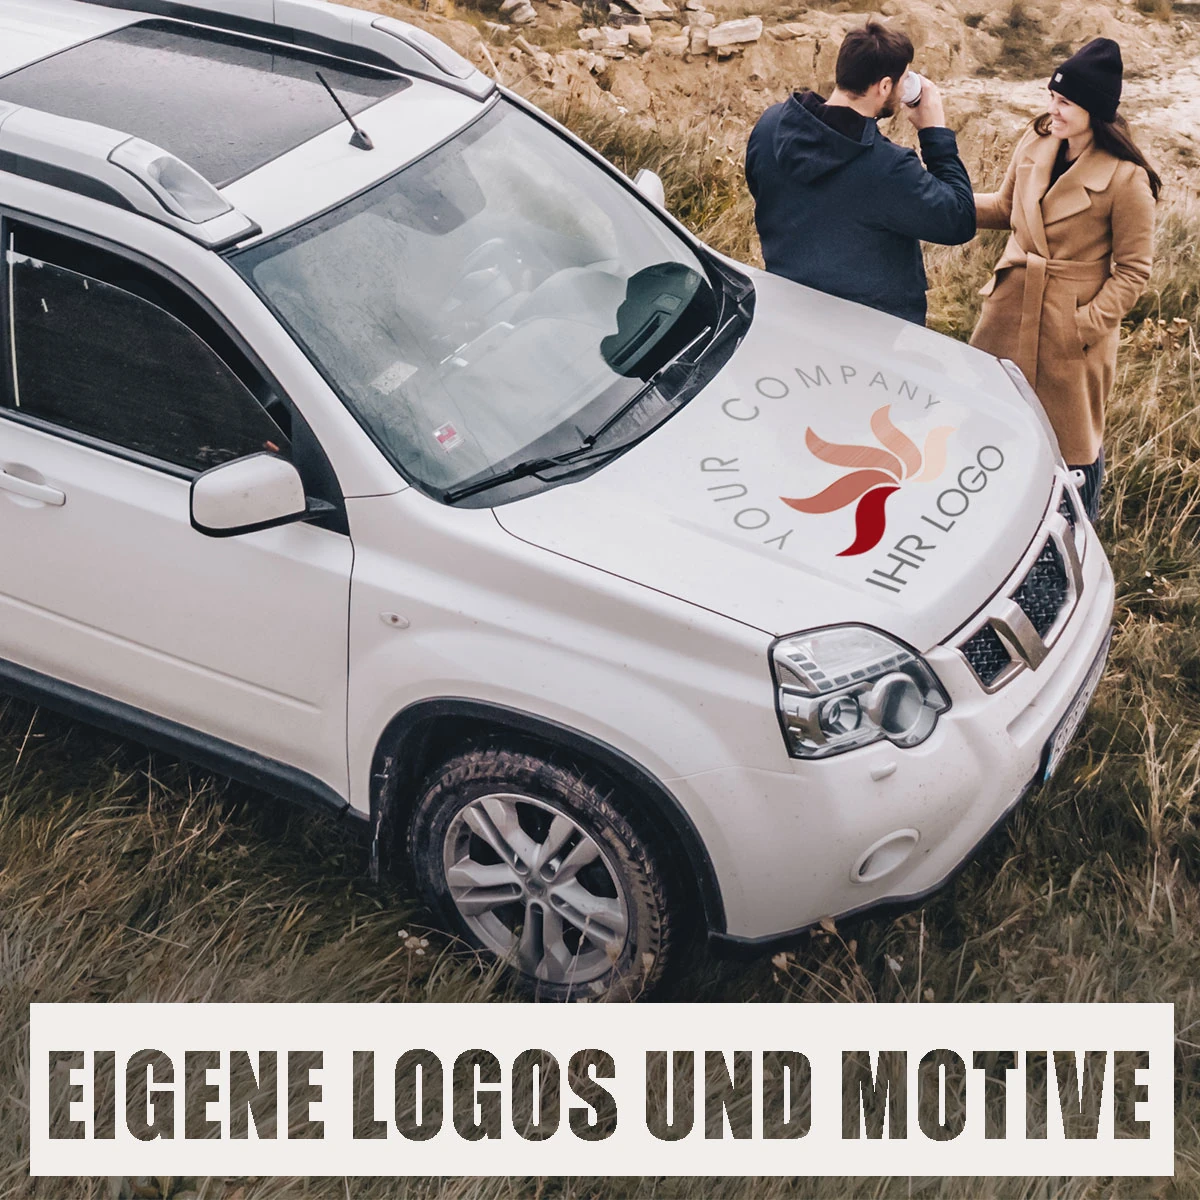 Eigene Logos und Motive als Autoaufkleber